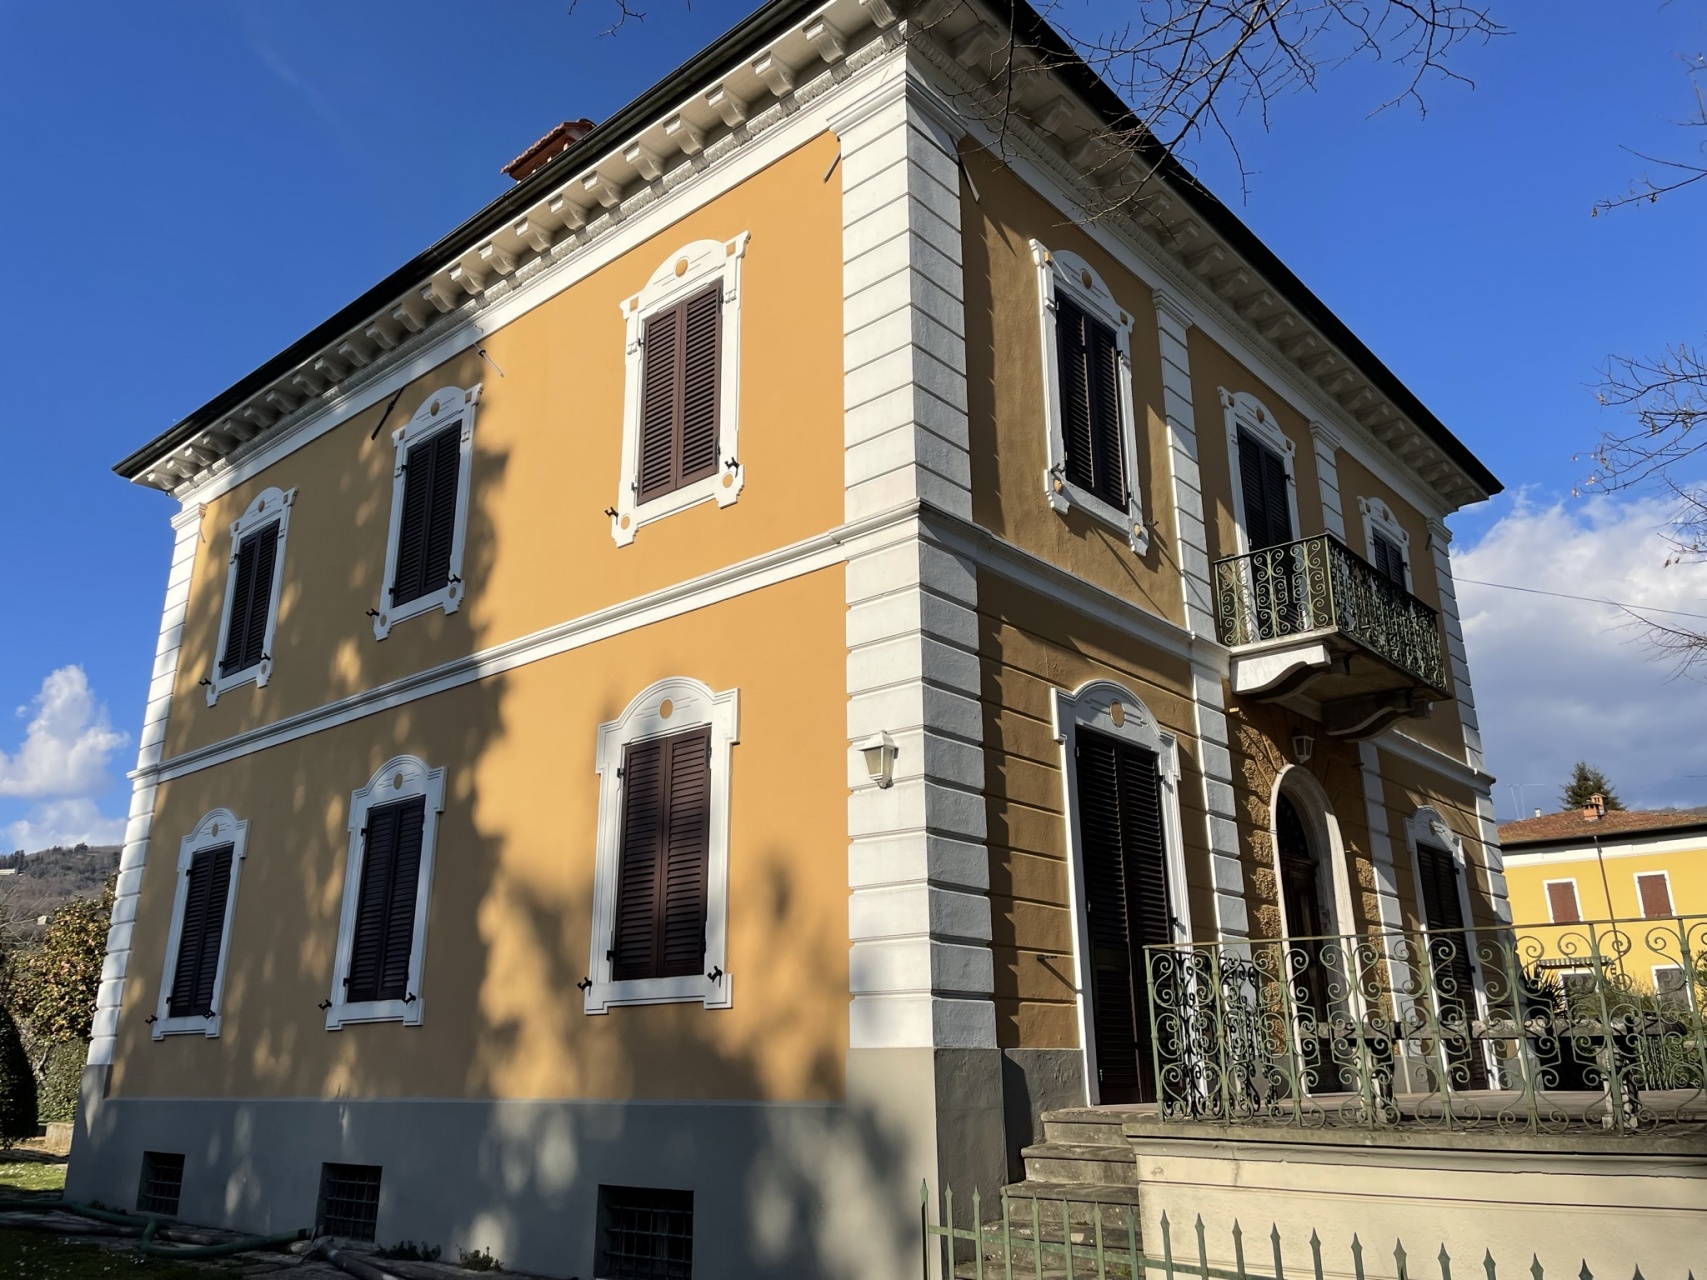 foto Villa in stile liberty, con dependance, garage e giardino a Barga, Lucca